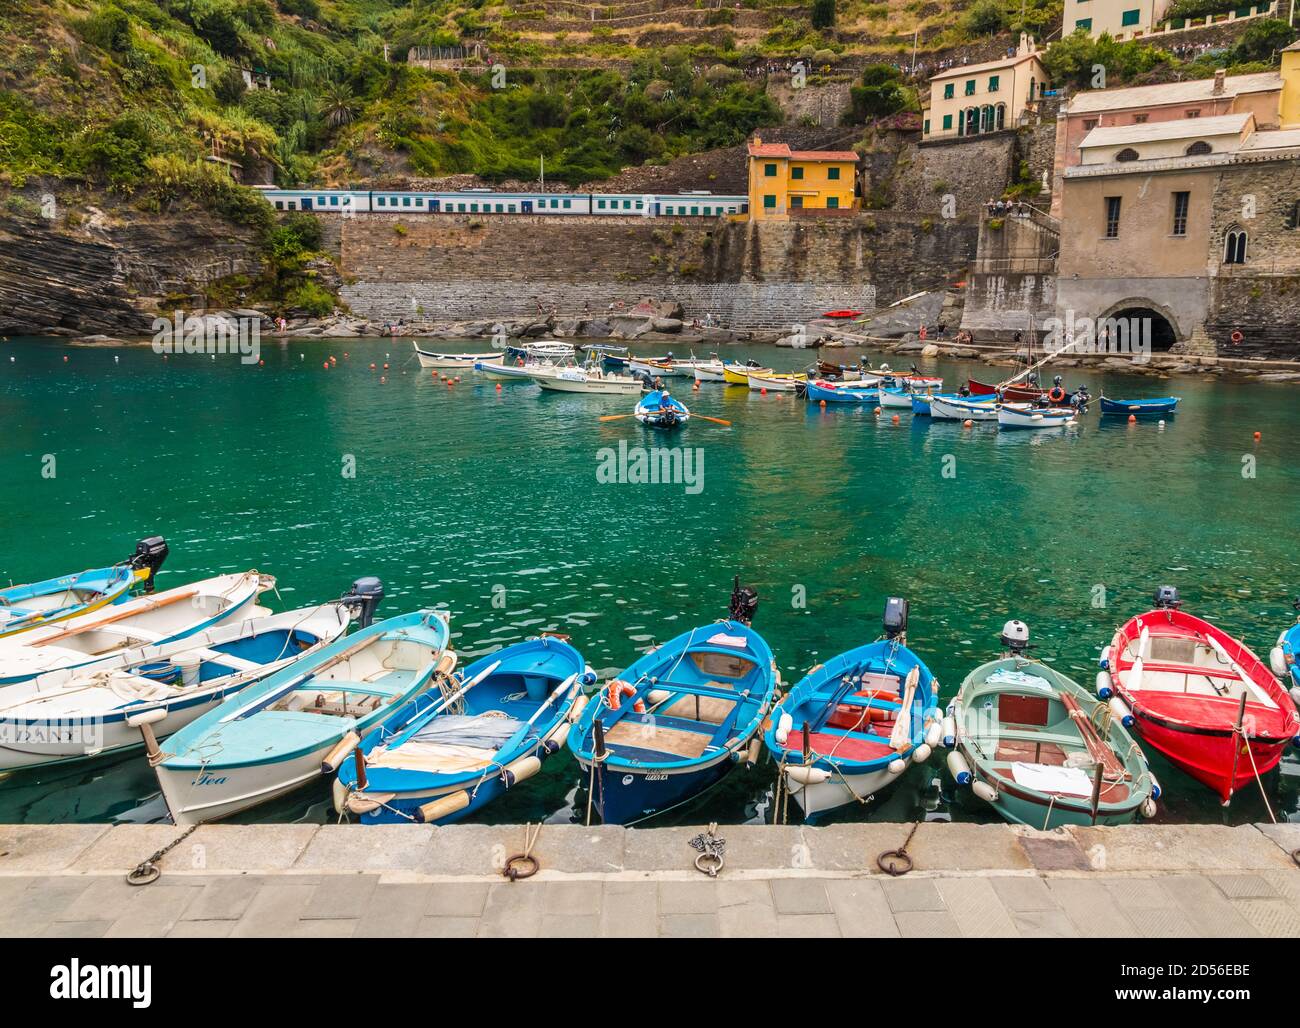 Belle vue sur le port de Vernazza dans la région côtière des Cinque Terre. De petits bateaux, flottant sur des eaux turquoise peu profondes, sont attachés à la jetée et dans... Banque D'Images